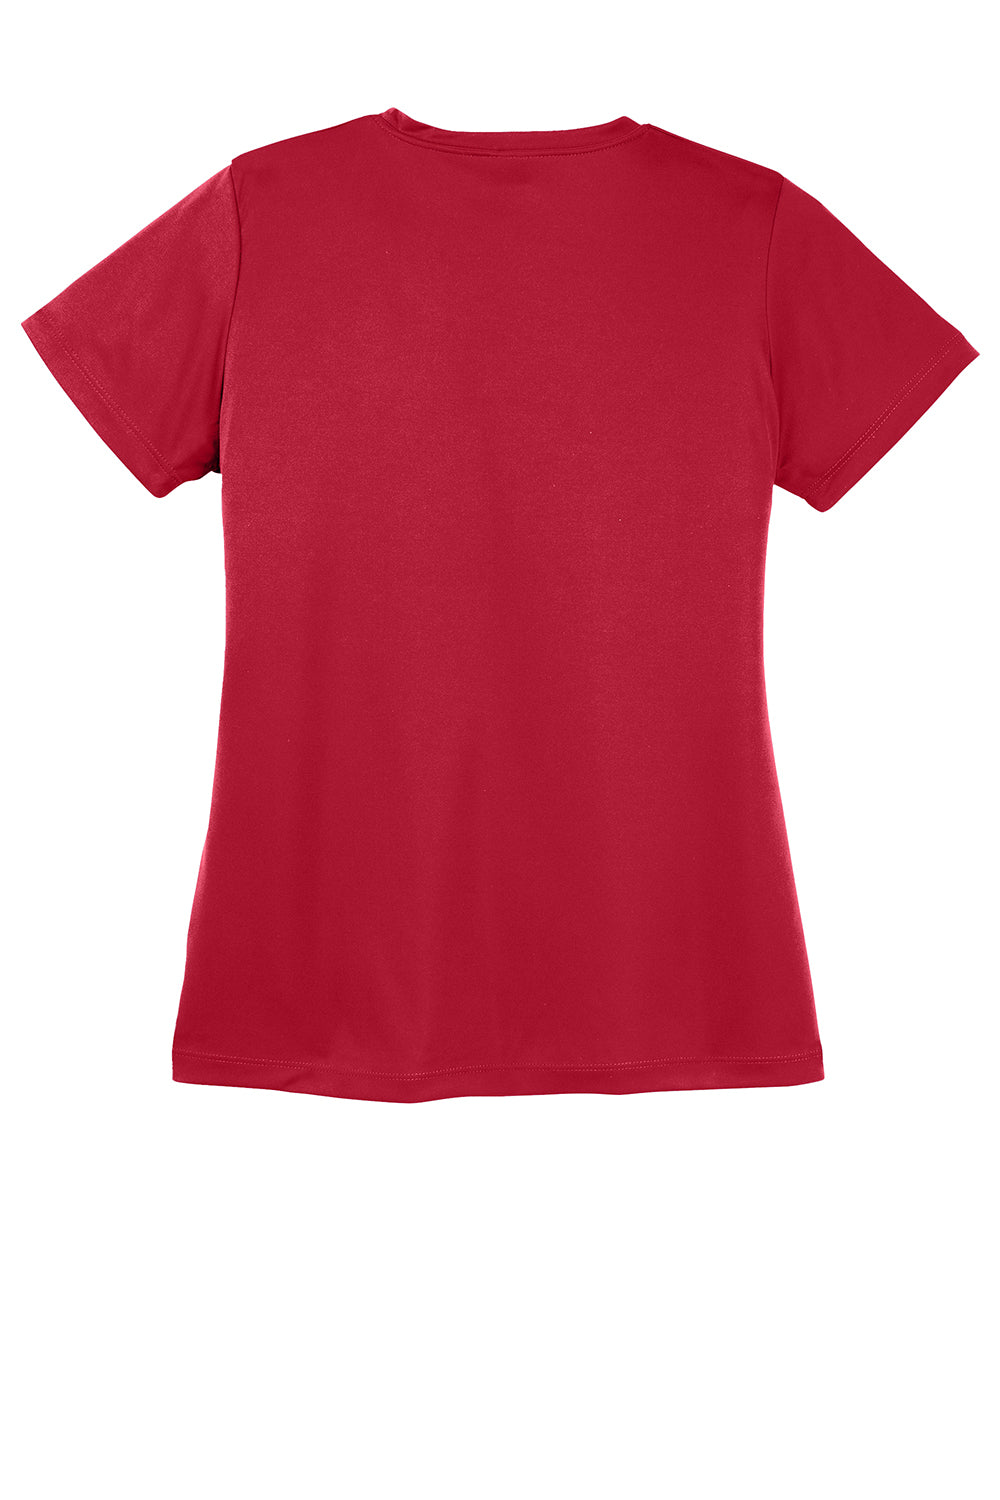 Sport-Tek LST350 Womens Competitor Moisture Wicking Short Sleeve Crewneck T-Shirt Deep Red Flat Back